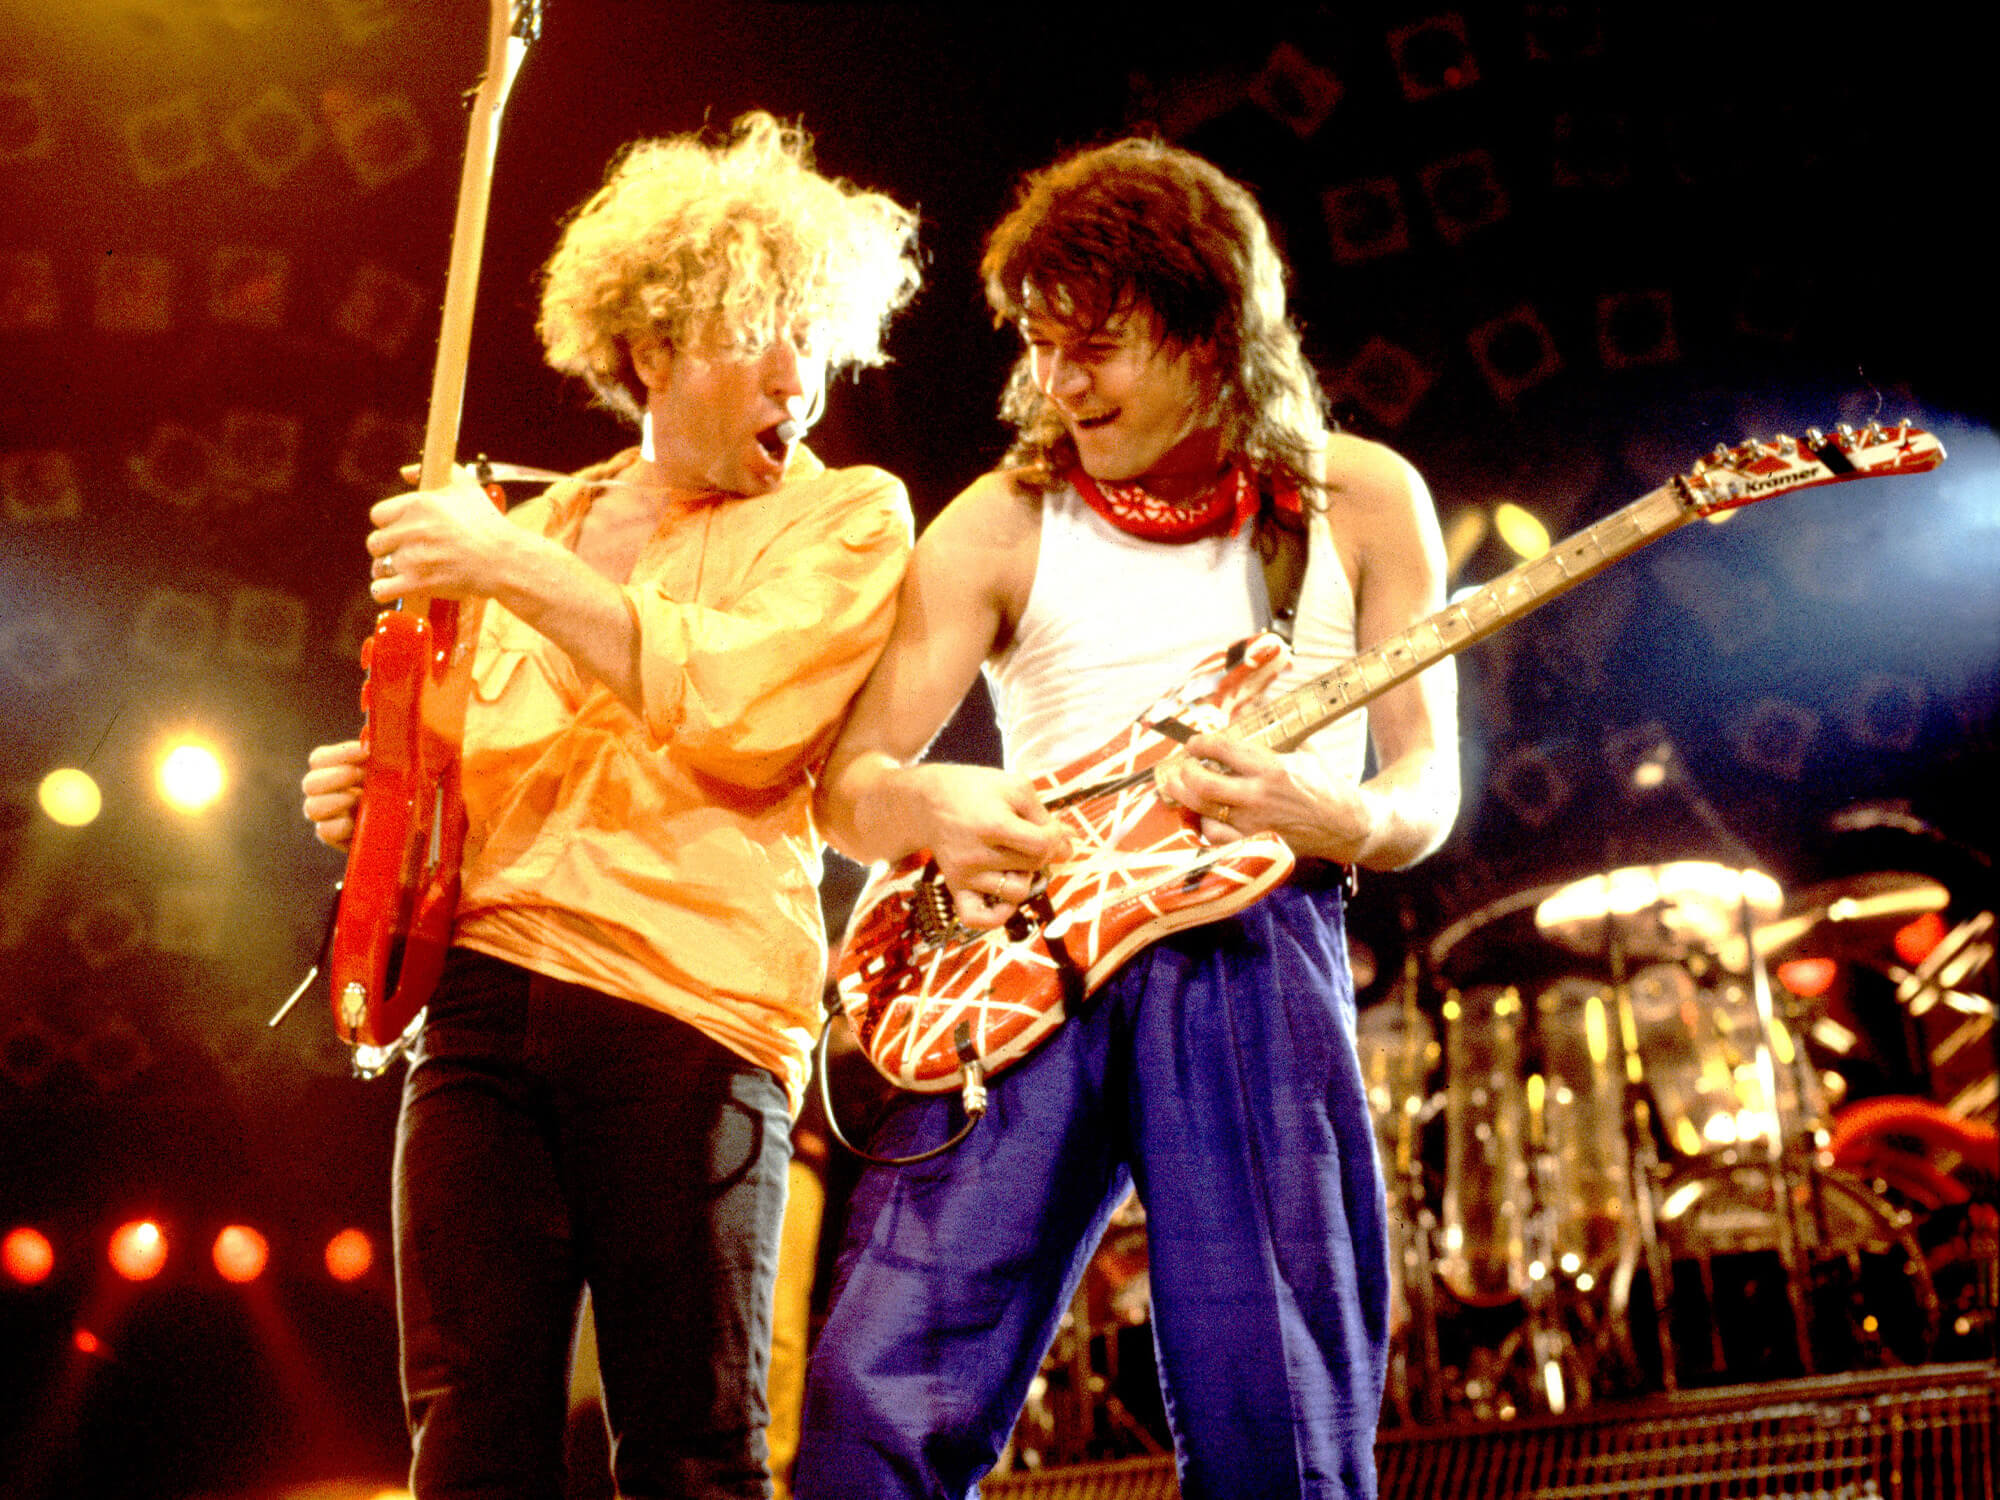 Sammy Hagar and Eddie Van Halen on stage in 1986